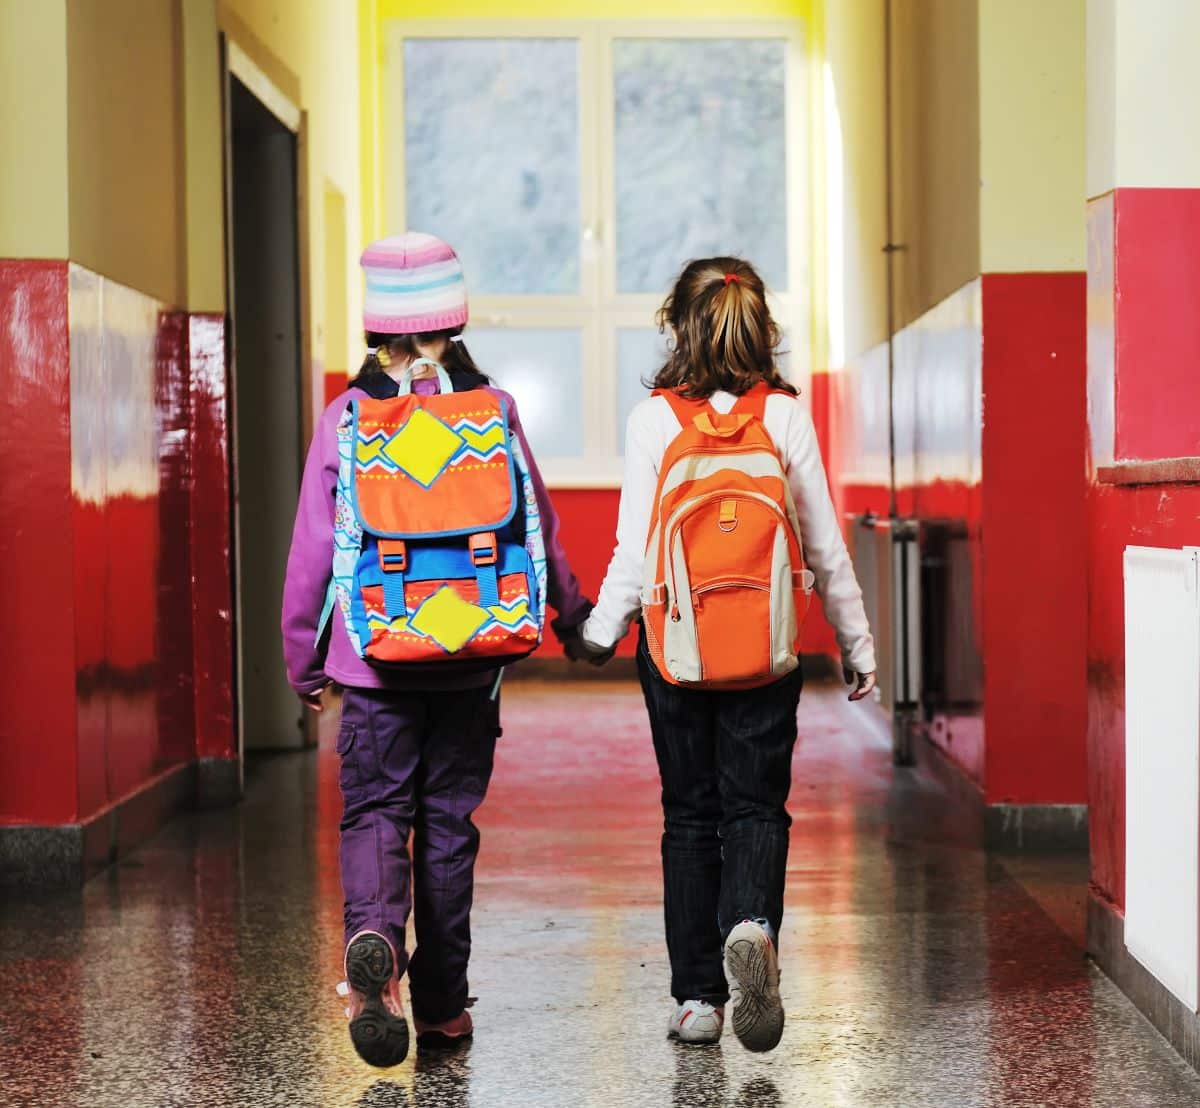 rentree scolaire enfants cours primaire - Tout ce qu'il faut savoir sur la prime de la rentrée scolaire en CP